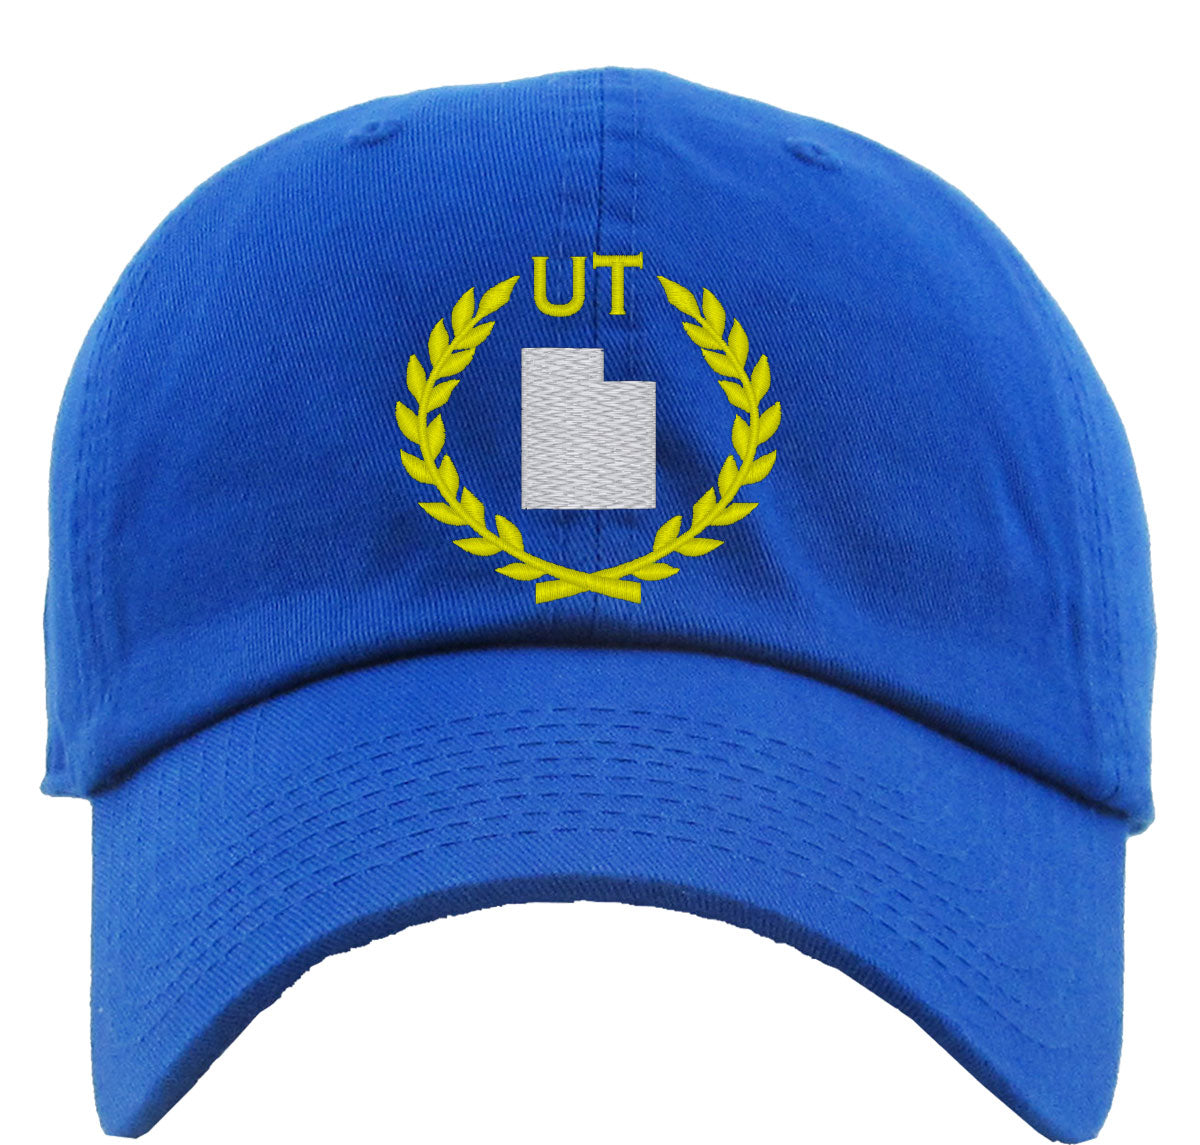 Utah State Premium Baseball Cap